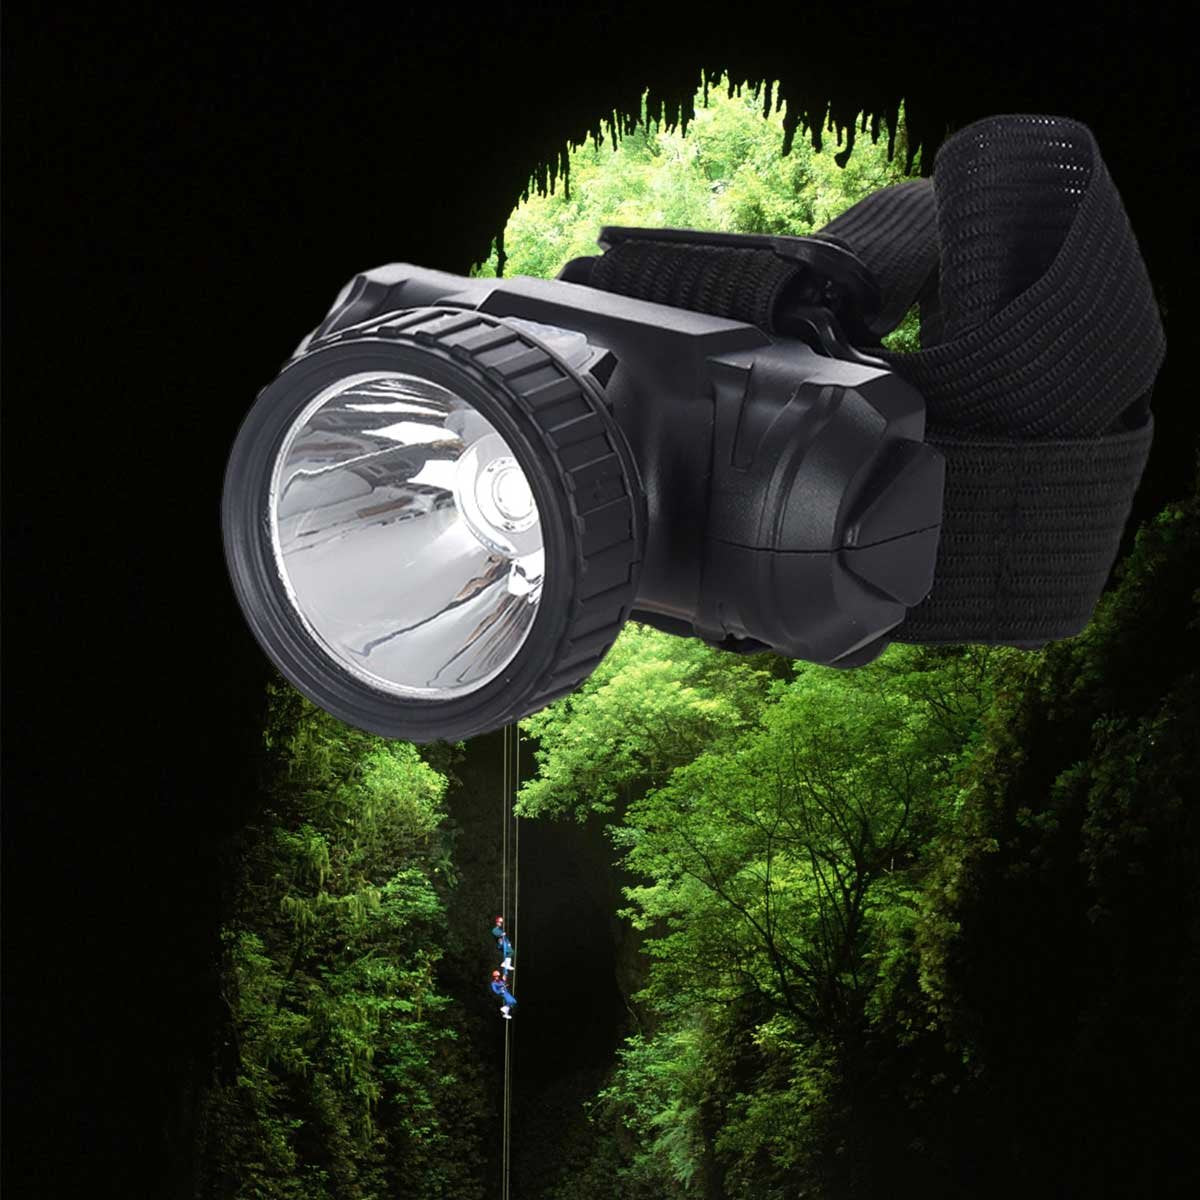 Lampada Frontale Super Luminosa Regolabile con 3 Modalita di Luce Ricaricabile con Cavo Micro USB IPX4 40x40mm Rotondo